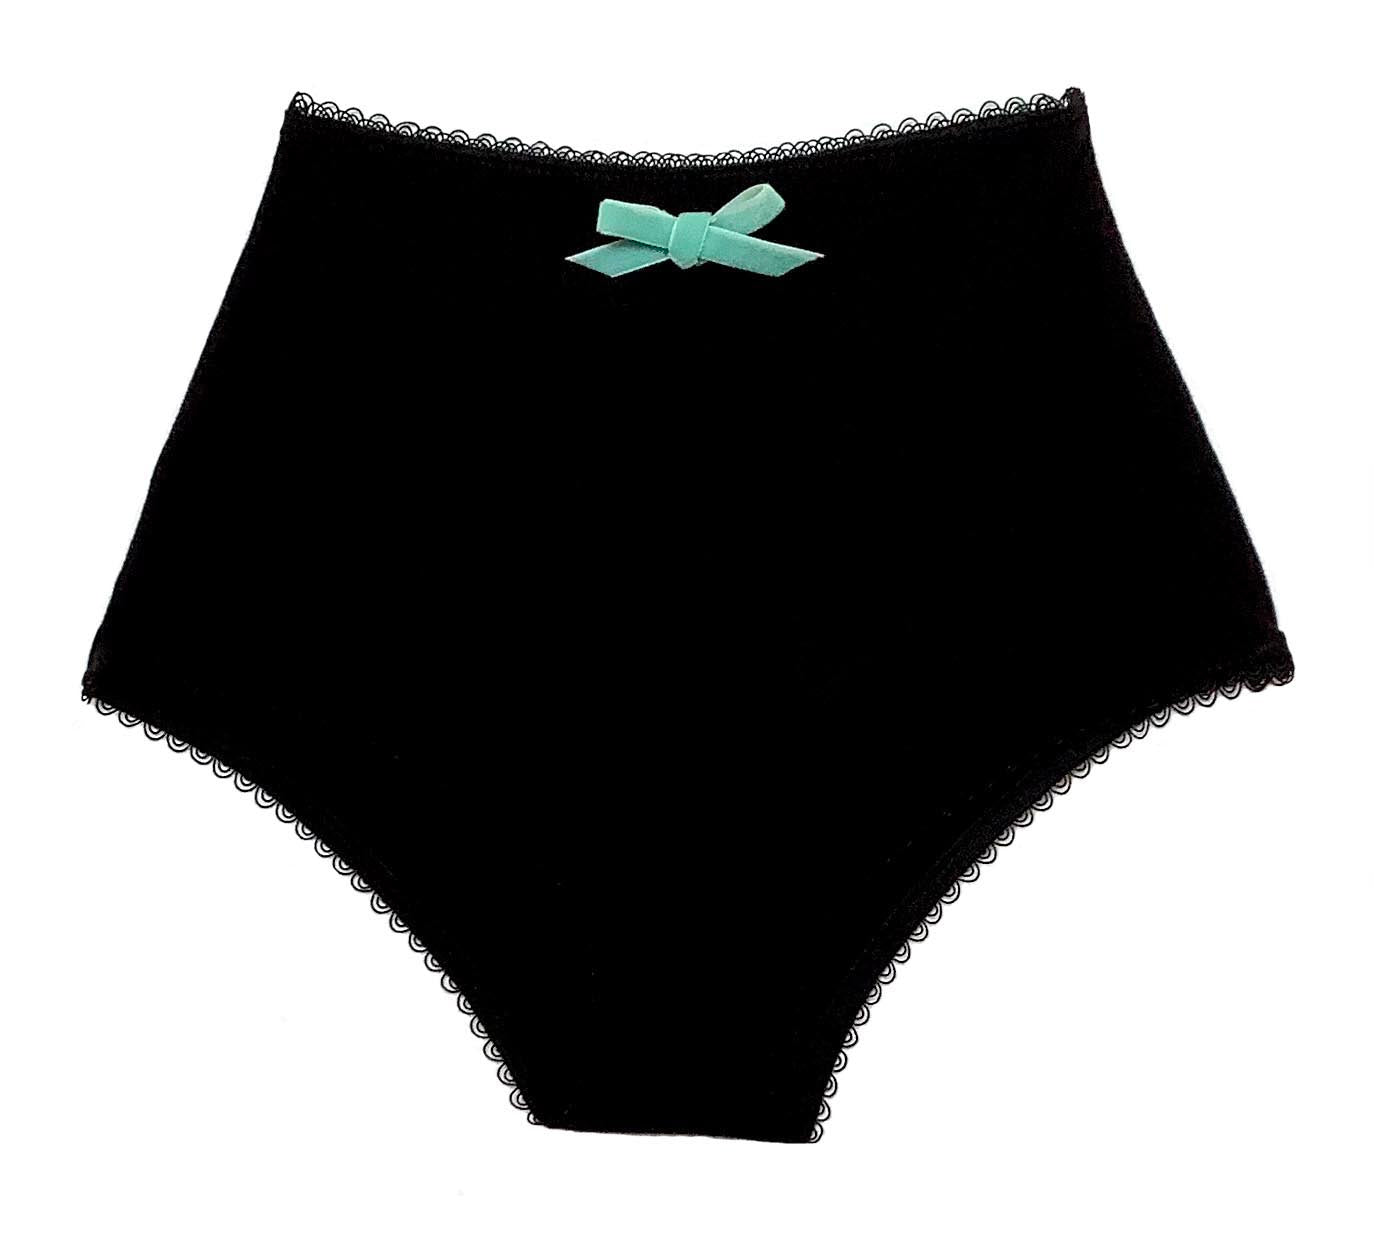 BRADY 12 Print Underwear for Girls Cute Women's Underpant Brady